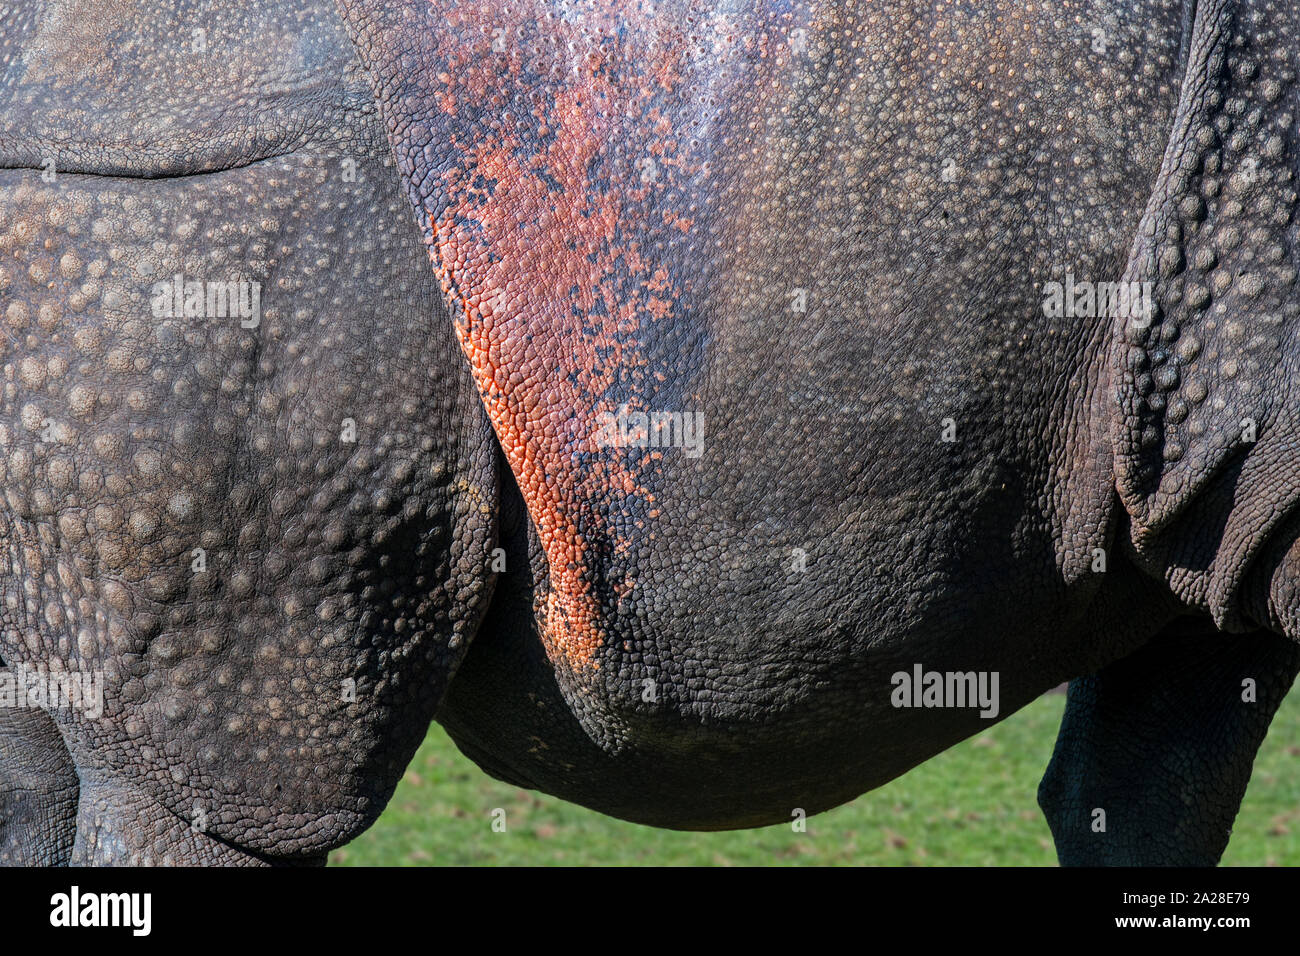 Rhinocéros indien / rhinocéros à une corne / rhinocéros unicorne de l'Inde (Rhinoceros unicornis) close-up de verrue-comme les bosses et les plis de peau rosâtre Banque D'Images